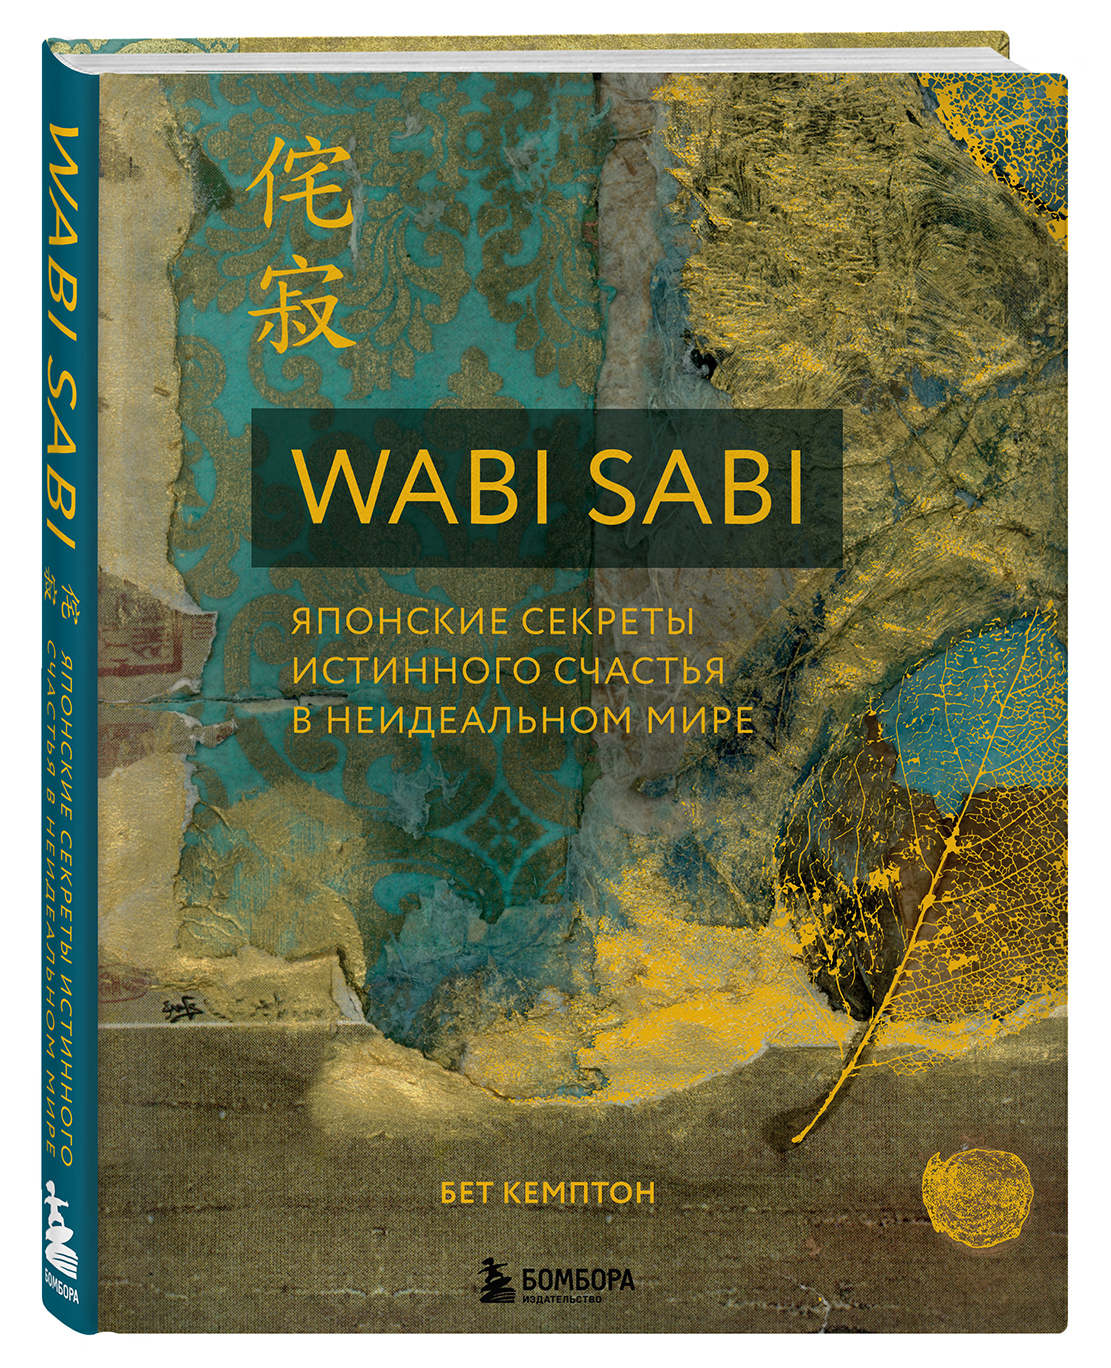 Wabi Sabi: Японские секреты истинного счастья в неидеальном мире